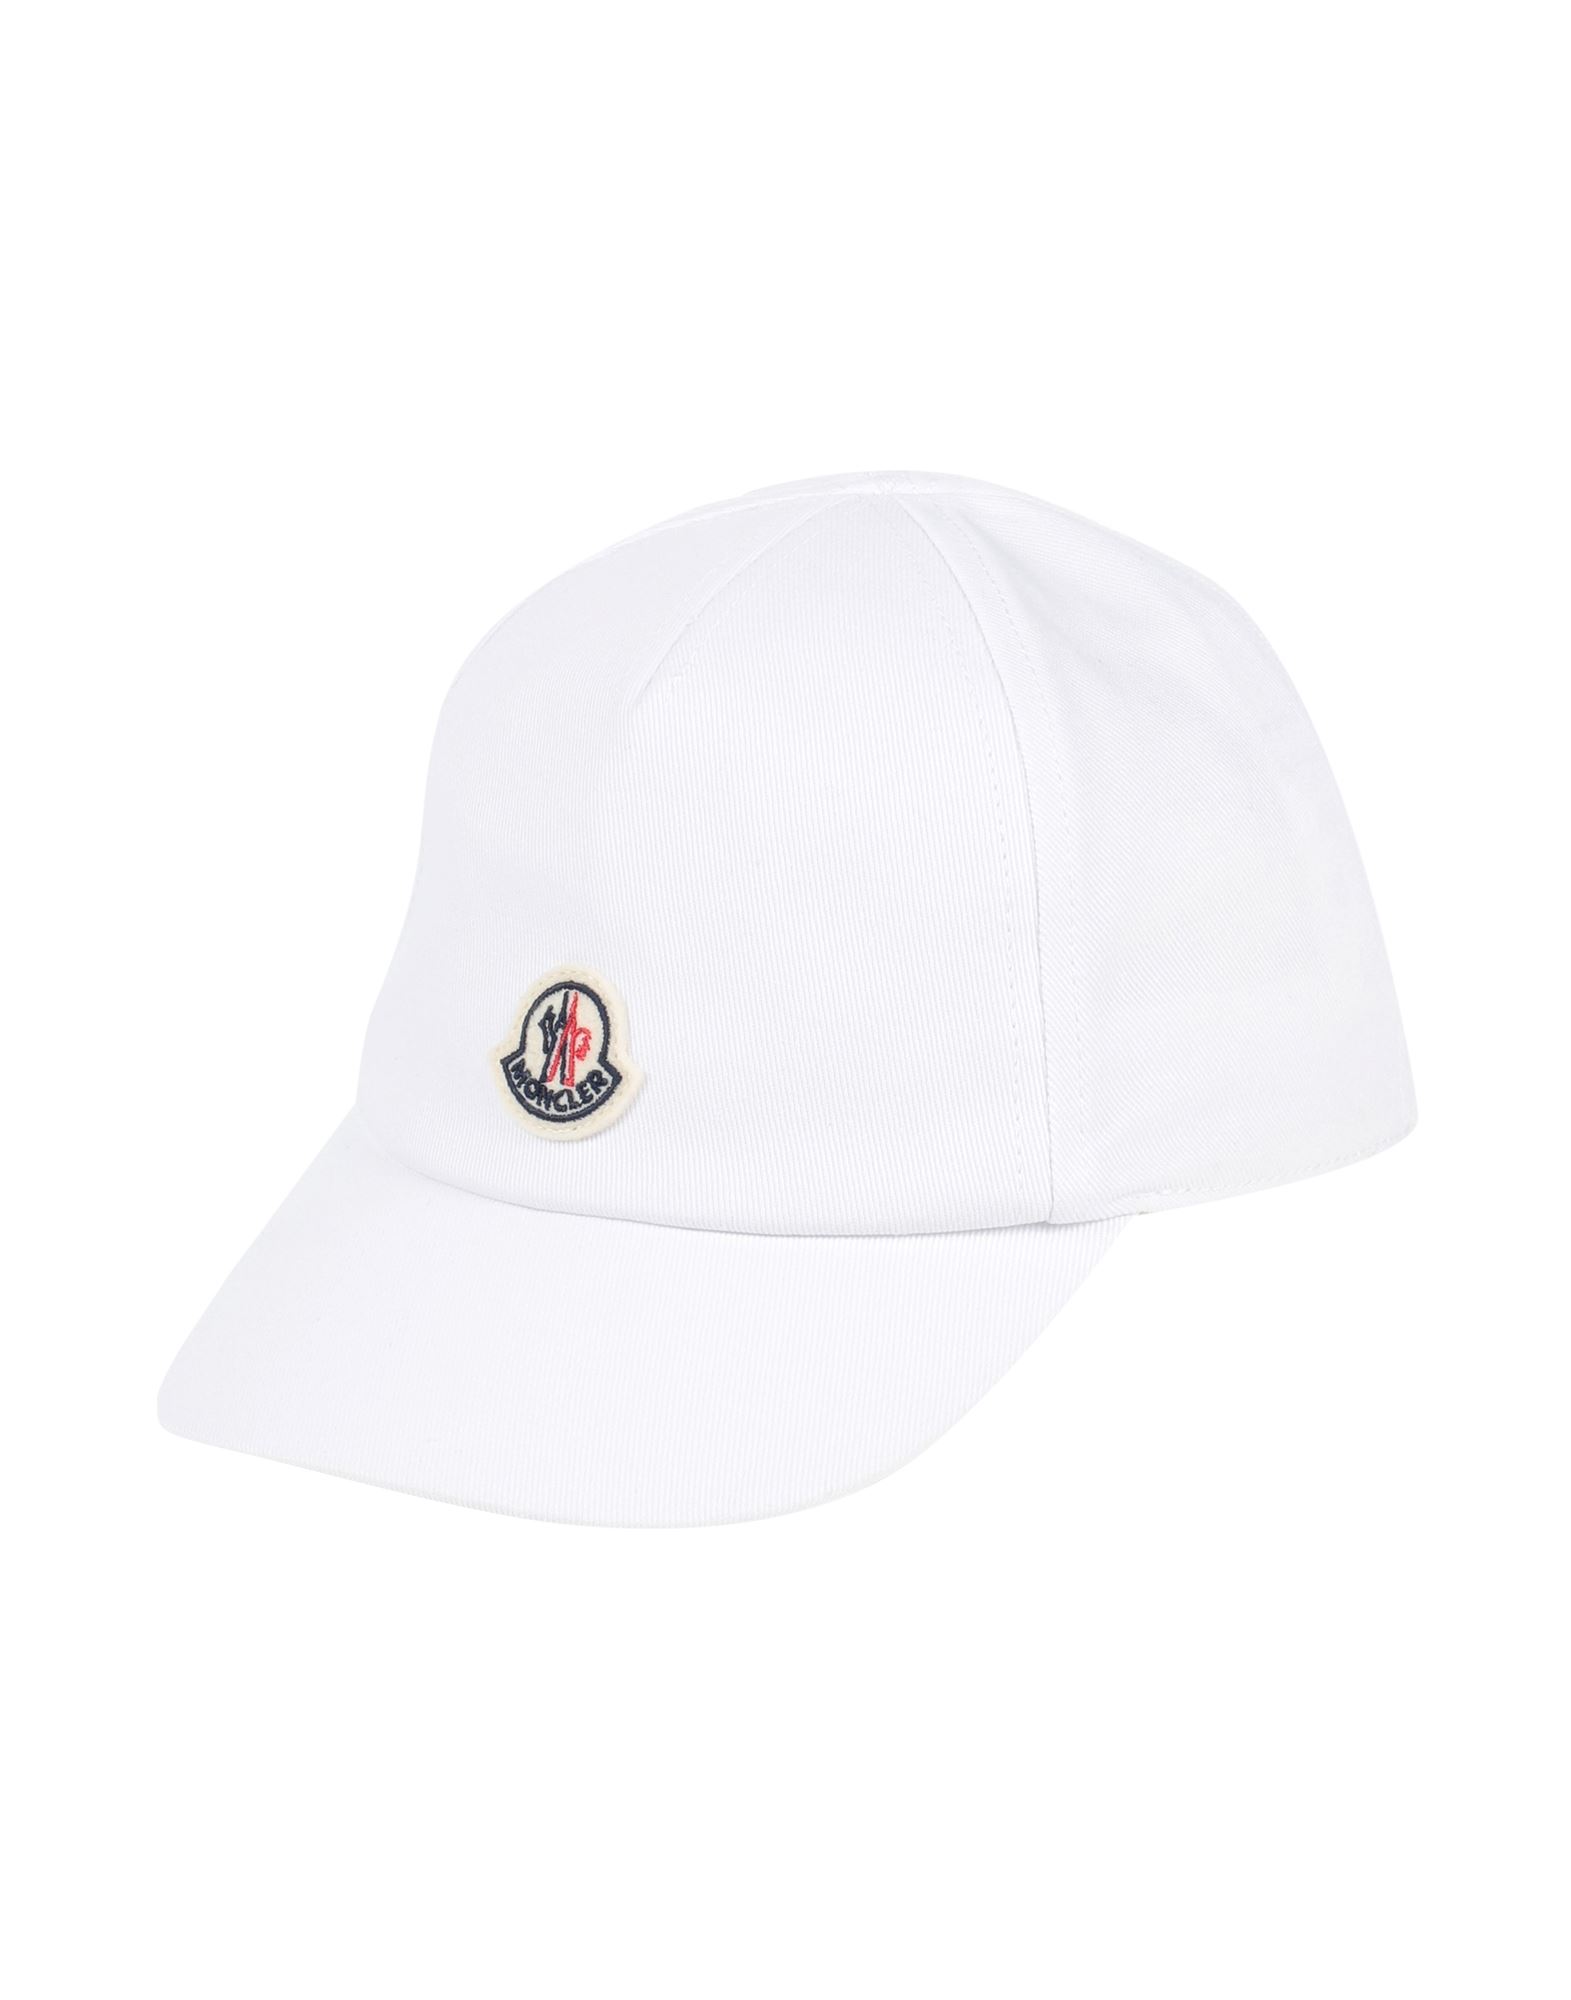 モンクレール(MONCLER) 帽子 メンズ帽子・キャップ | 通販・人気 ...